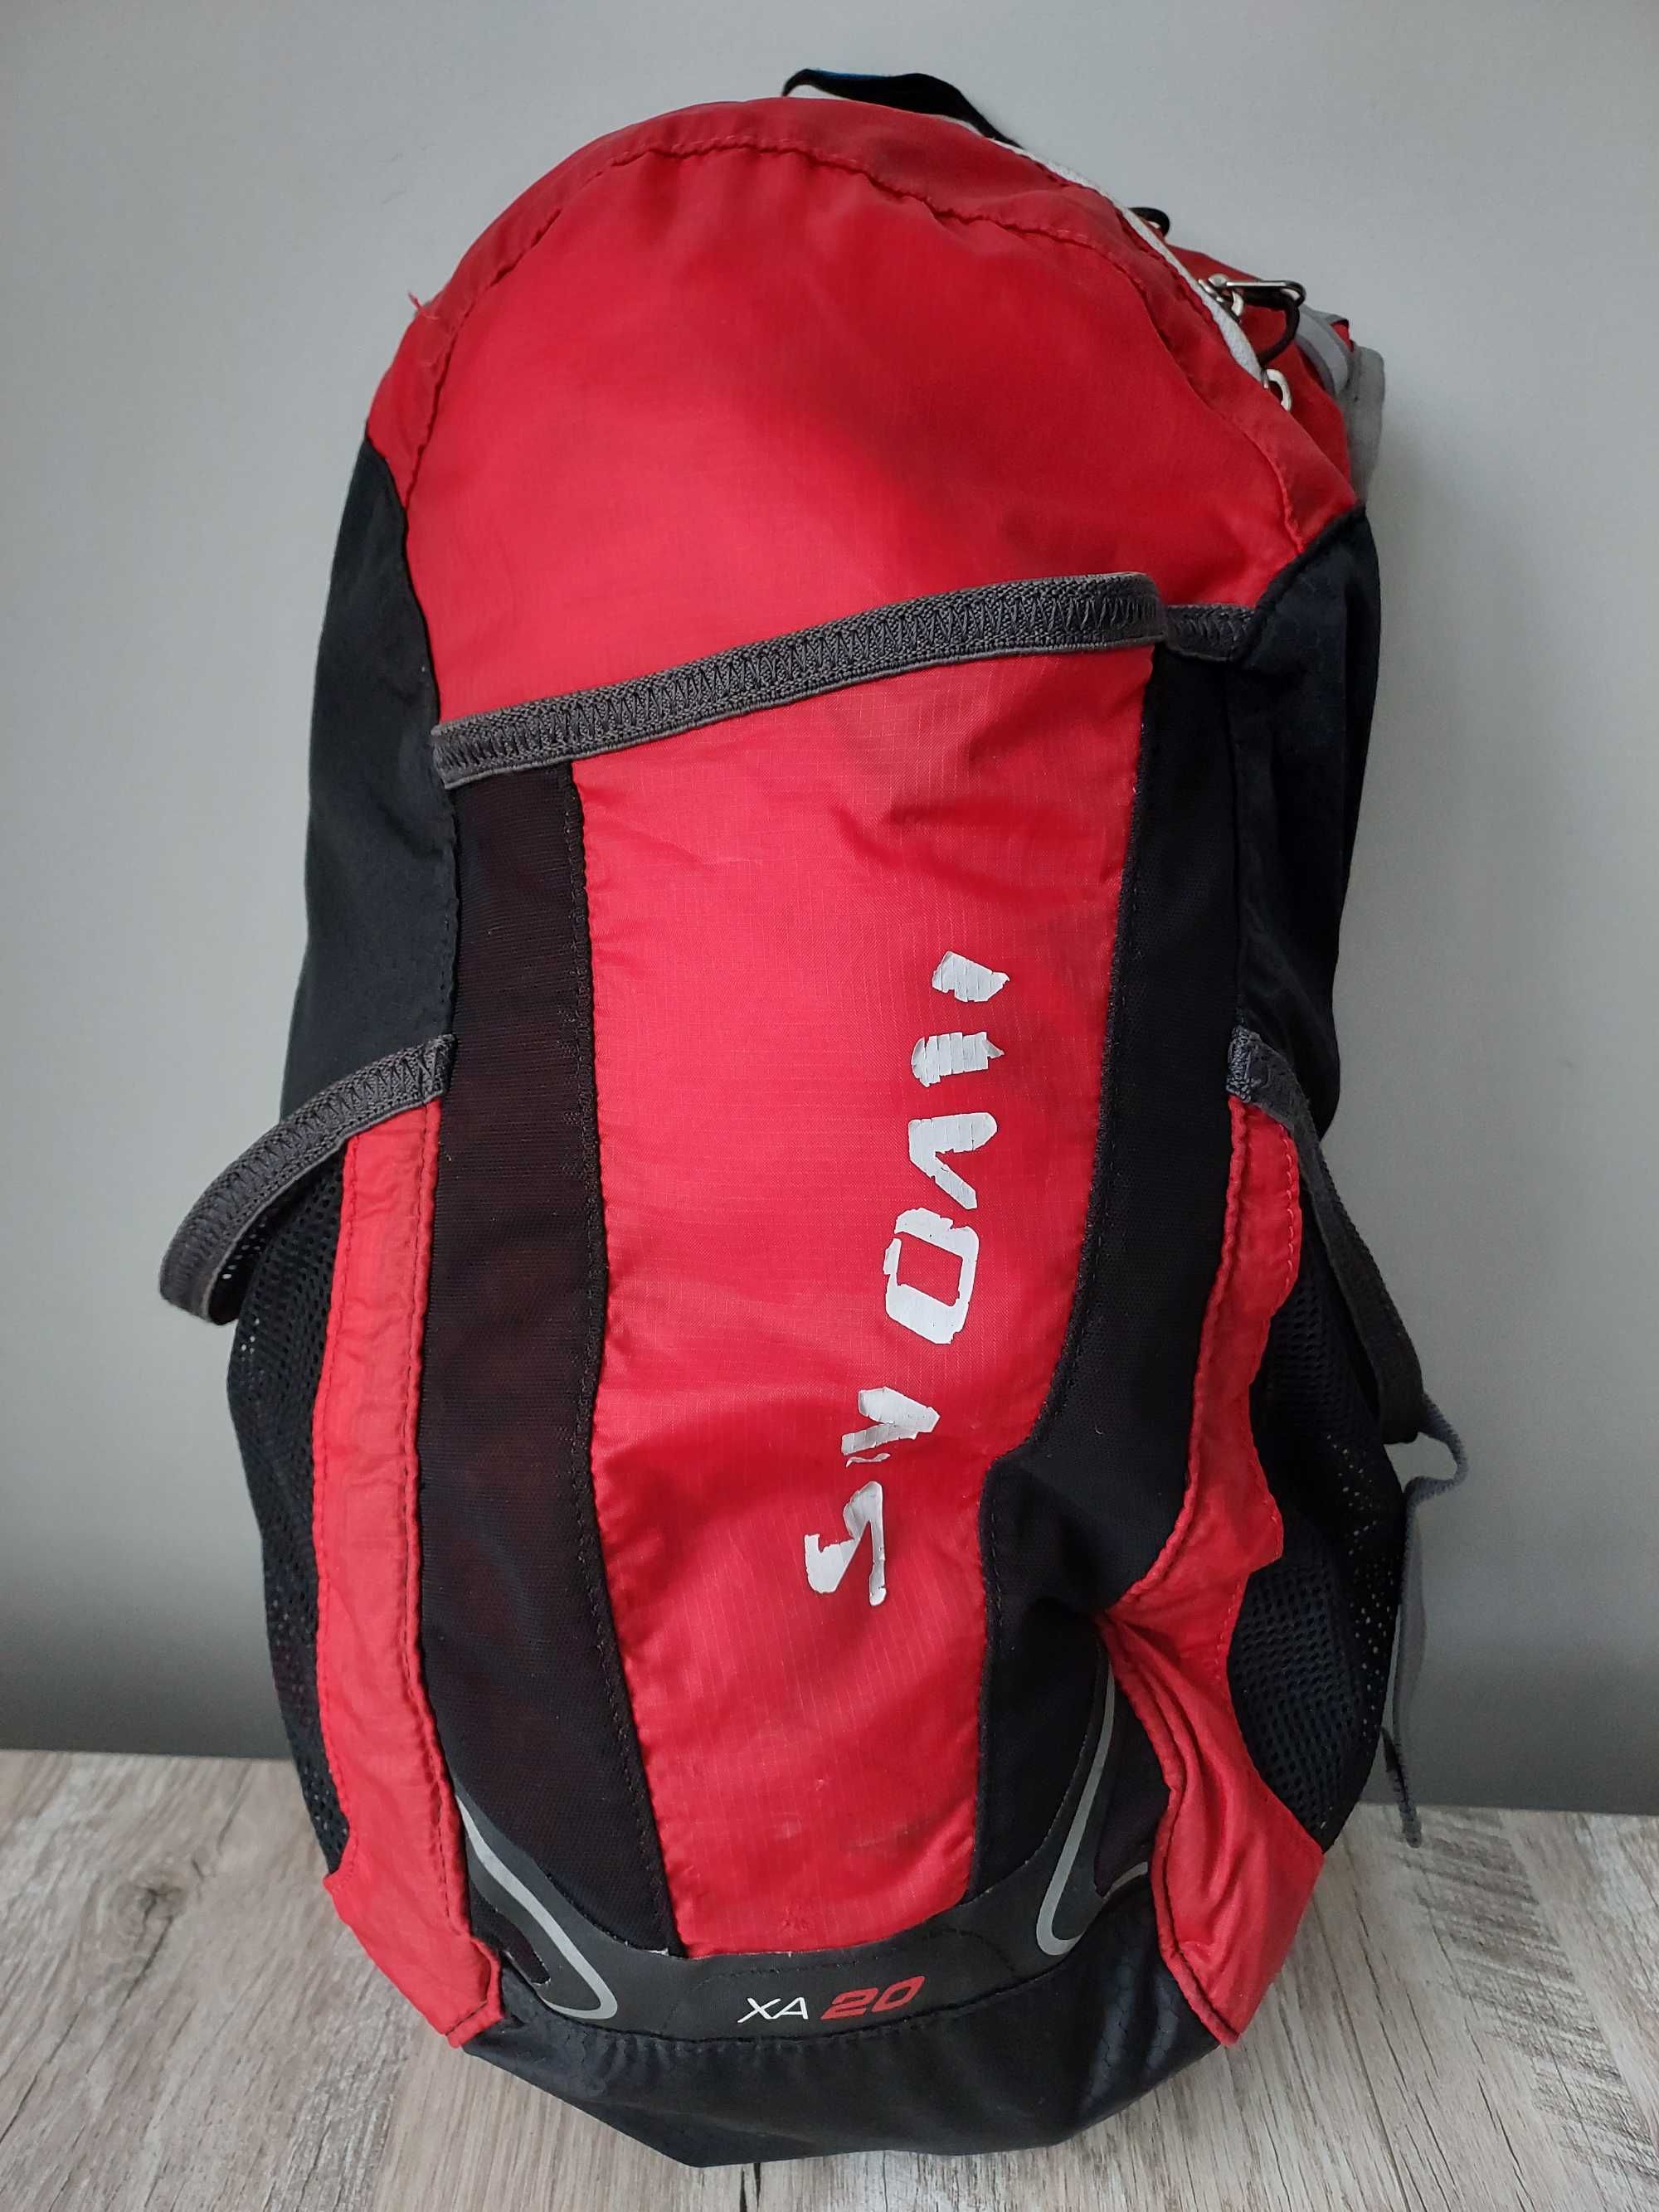 Біговий трейловий жилет / рюкзак Salomon  XA 20